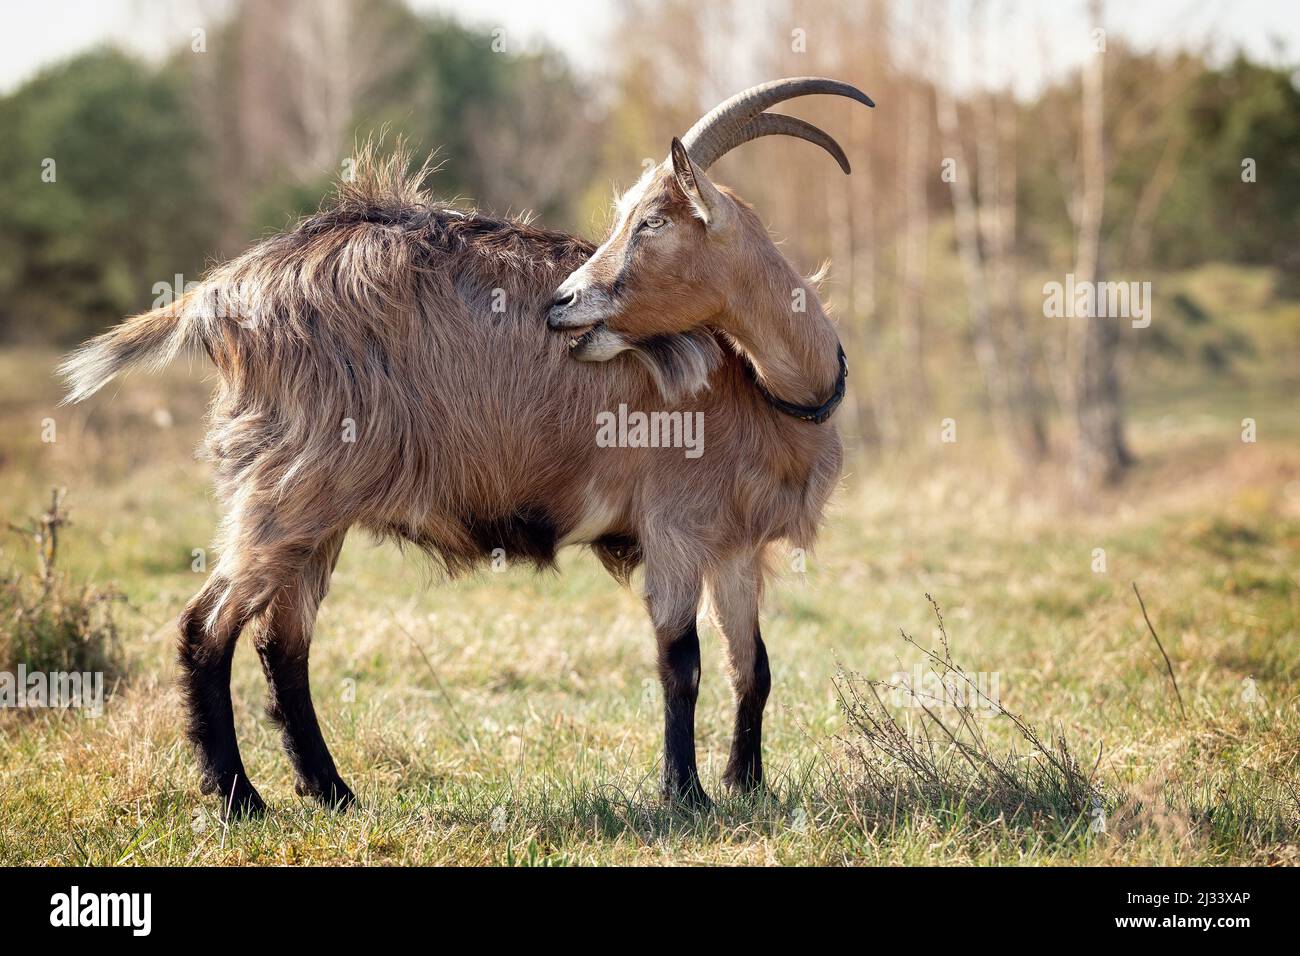 Capelli castani, una capra con corna lunghe si erge nel prato durante l'estate e graffiare la sua pelliccia. Foto Stock